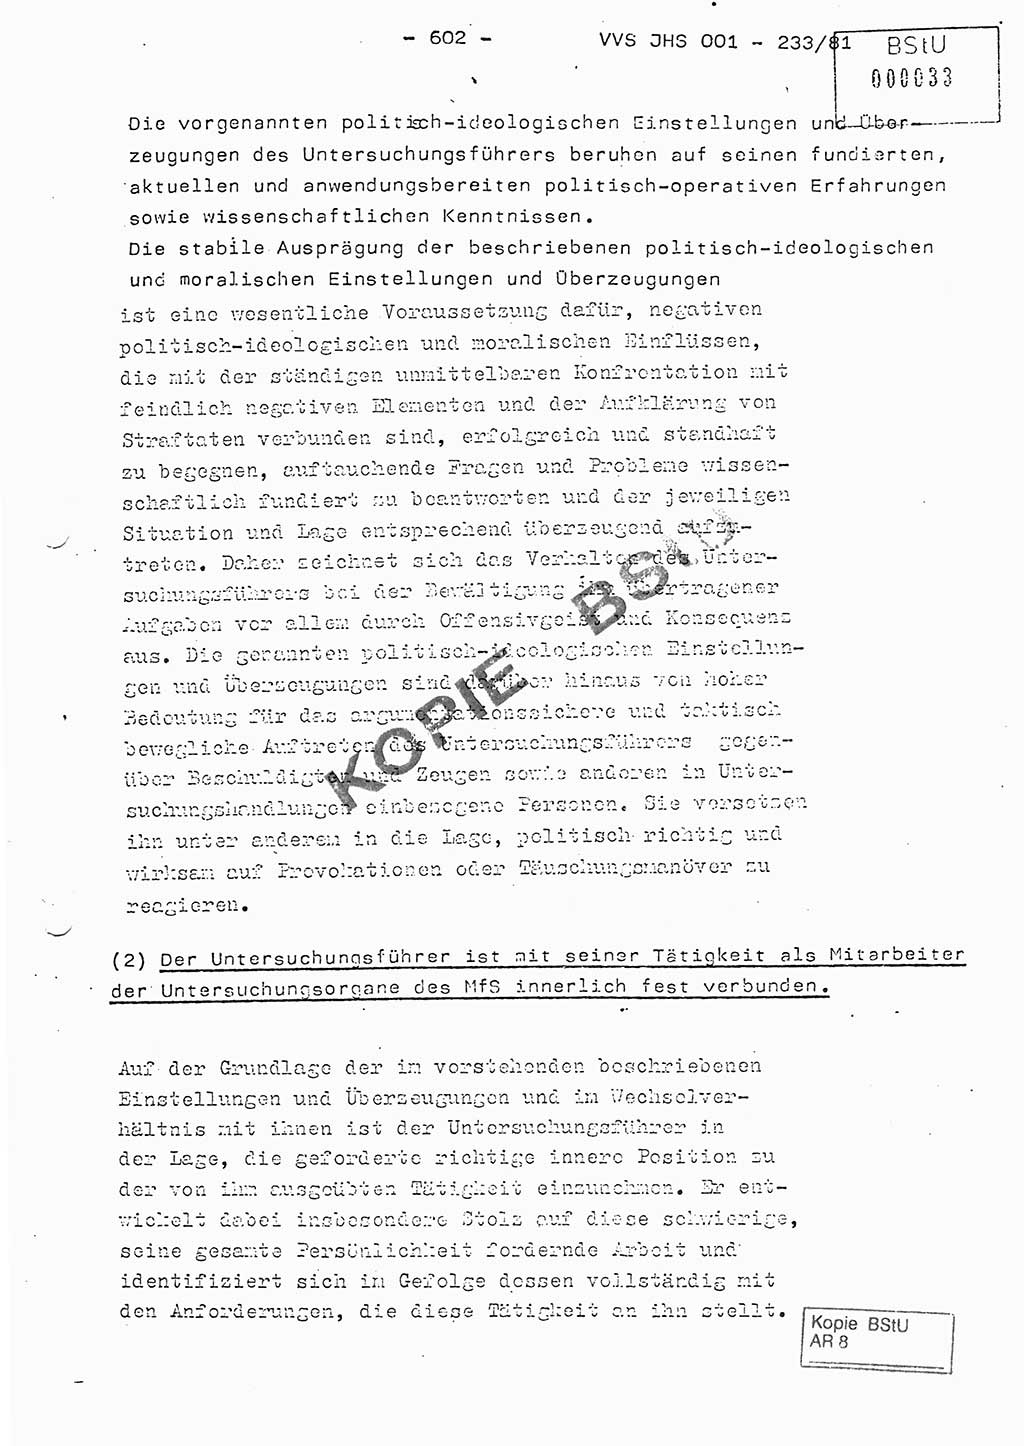 Dissertation Oberstleutnant Horst Zank (JHS), Oberstleutnant Dr. Karl-Heinz Knoblauch (JHS), Oberstleutnant Gustav-Adolf Kowalewski (HA Ⅸ), Oberstleutnant Wolfgang Plötner (HA Ⅸ), Ministerium für Staatssicherheit (MfS) [Deutsche Demokratische Republik (DDR)], Juristische Hochschule (JHS), Vertrauliche Verschlußsache (VVS) o001-233/81, Potsdam 1981, Blatt 602 (Diss. MfS DDR JHS VVS o001-233/81 1981, Bl. 602)